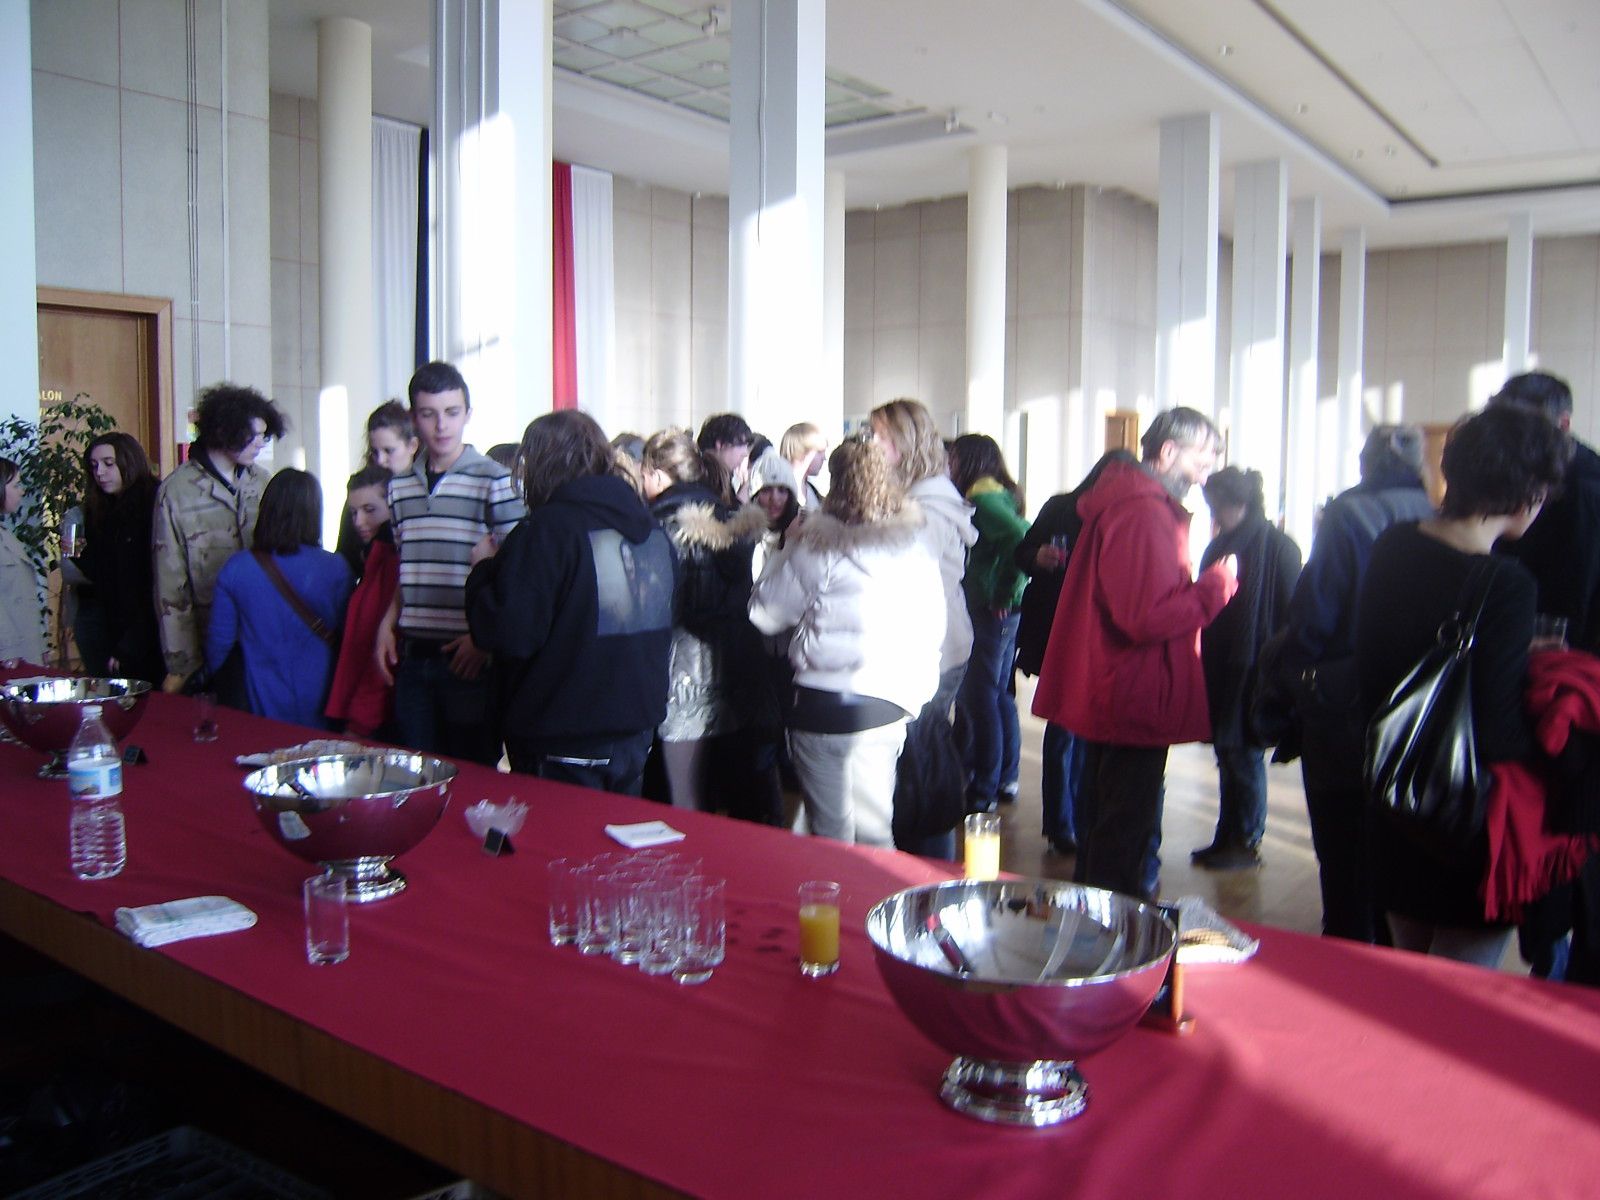 Du 1er au 6 mars 2010, 12 lycéens du Liceo Cecioni à Livourne ont séjourné au Lycée de l'Iroise à Brest, consolidé les liens avec les partenaires brestoois d'i-voix, participé à des cours et des ateliers d'écriture, visité Brest et la Bret